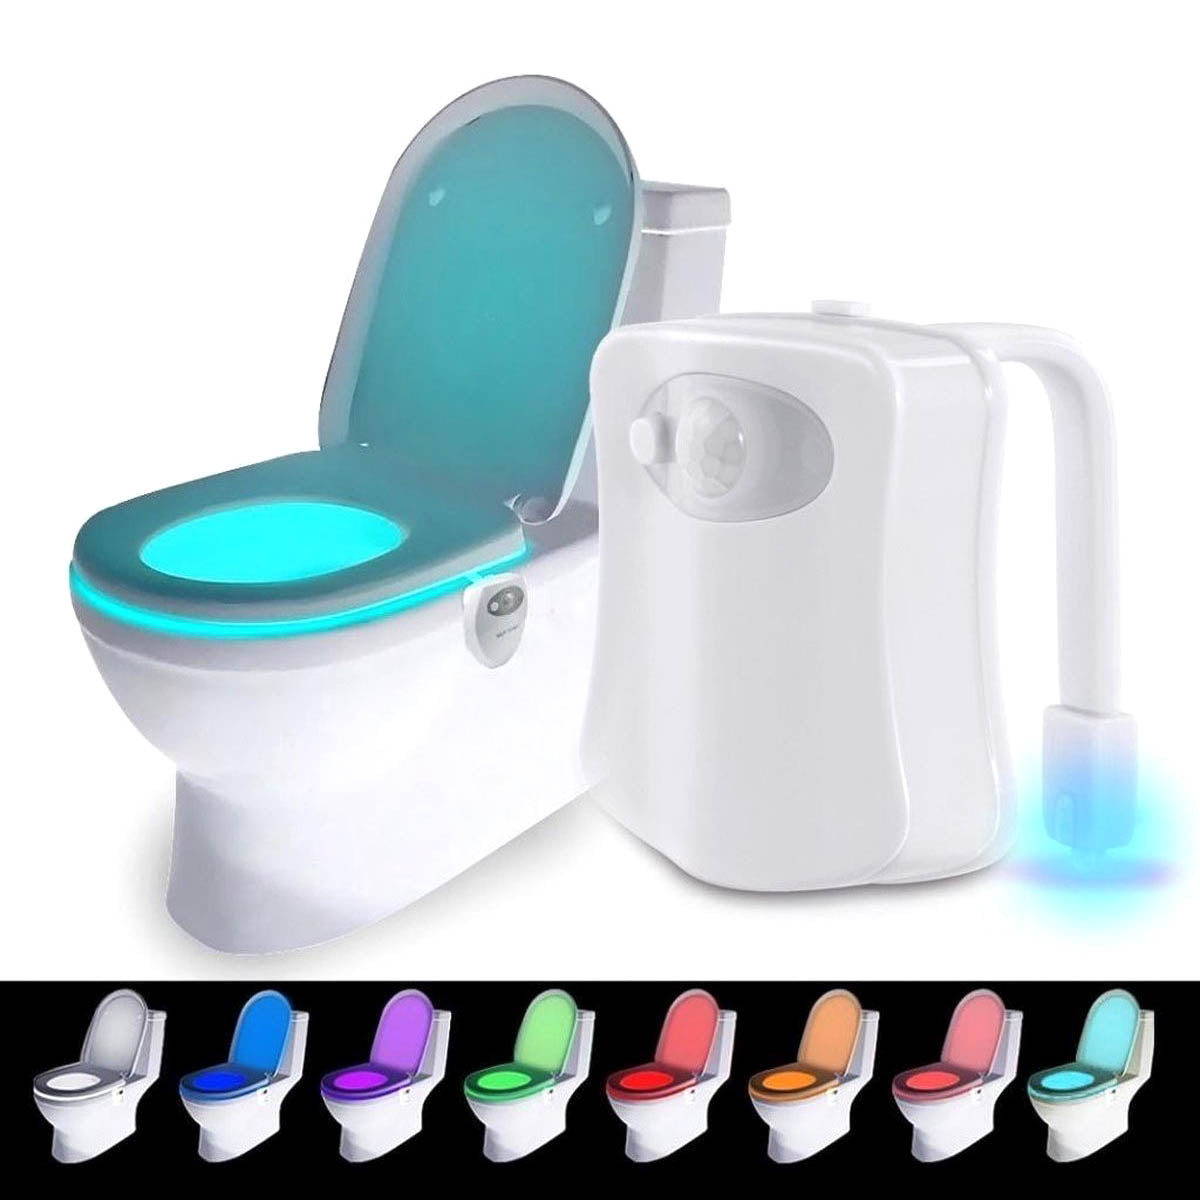 Ariko Éclairage LED des toilettes - 8 couleurs - Détecteur de mouvement - Économie de batterie - Différentes couleurs de lumière - Piles incluses